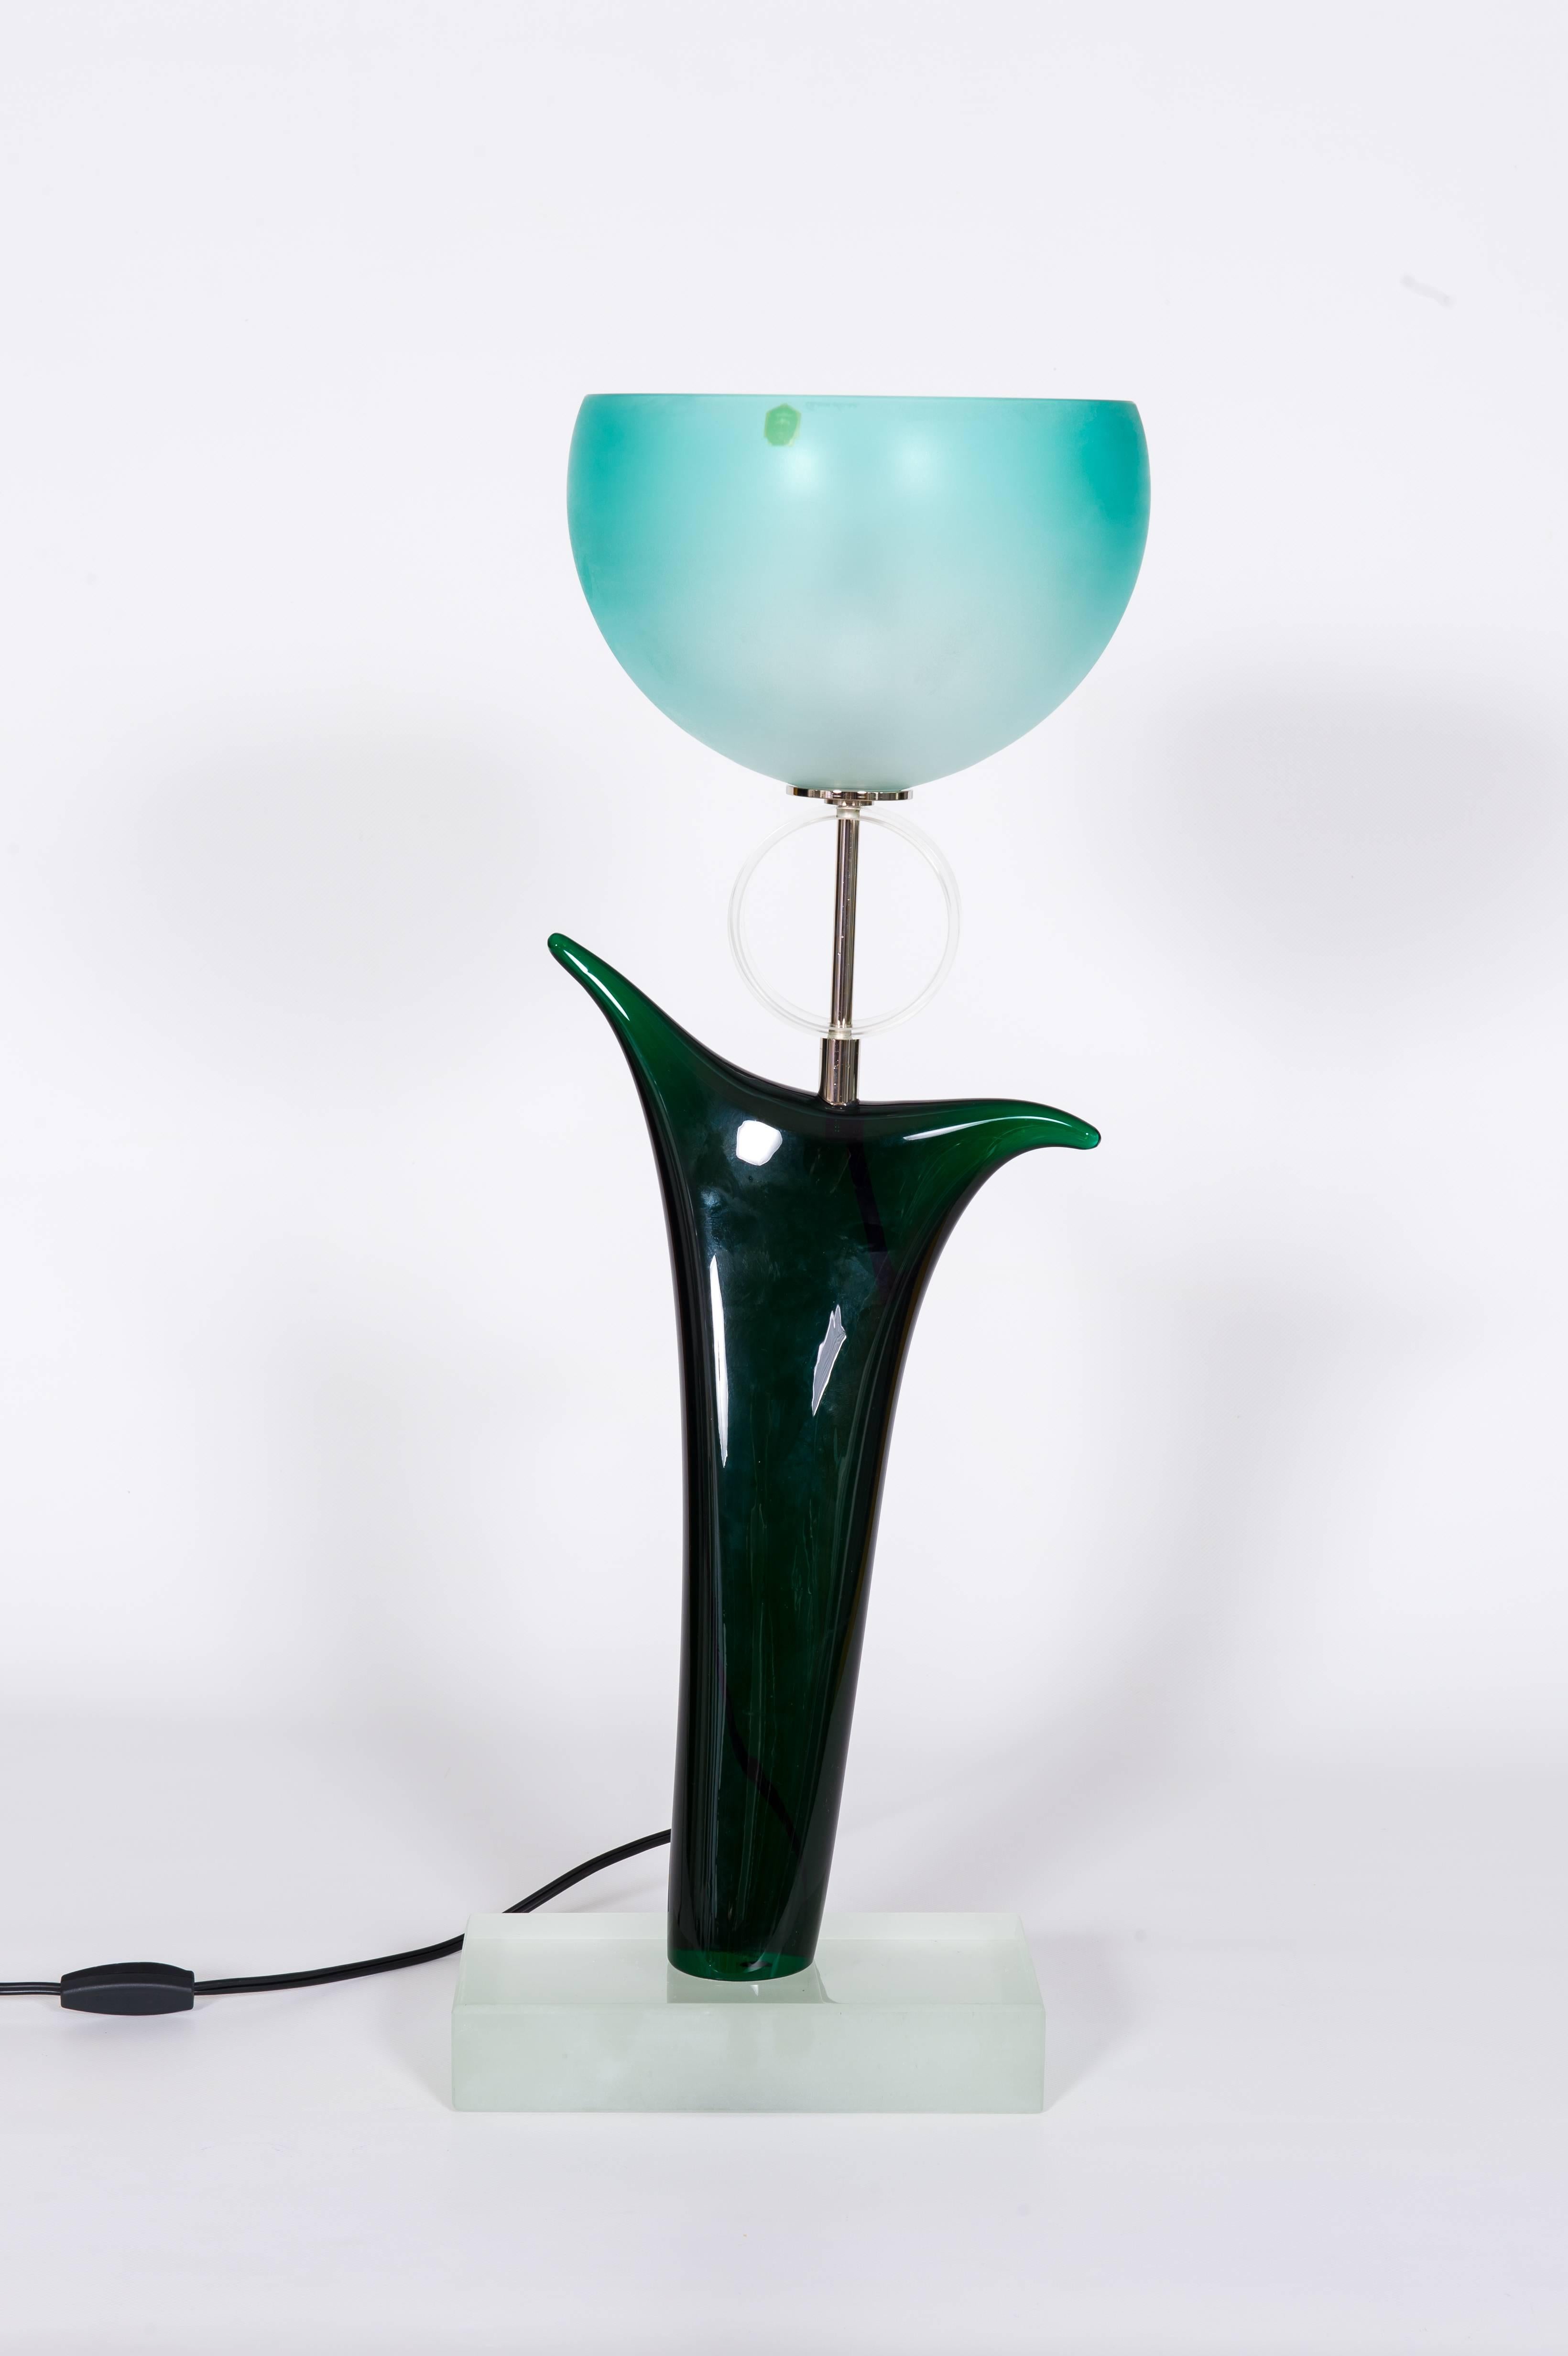 Lampe de bureau Tulip d'origine Cenedese en verre de Murano vert et bleu, 1970, Italie

Entièrement réalisée à la main dans les années 1970 à Murano, cette lampe de table design est une authentique création du célèbre souffleur de verre vénitien